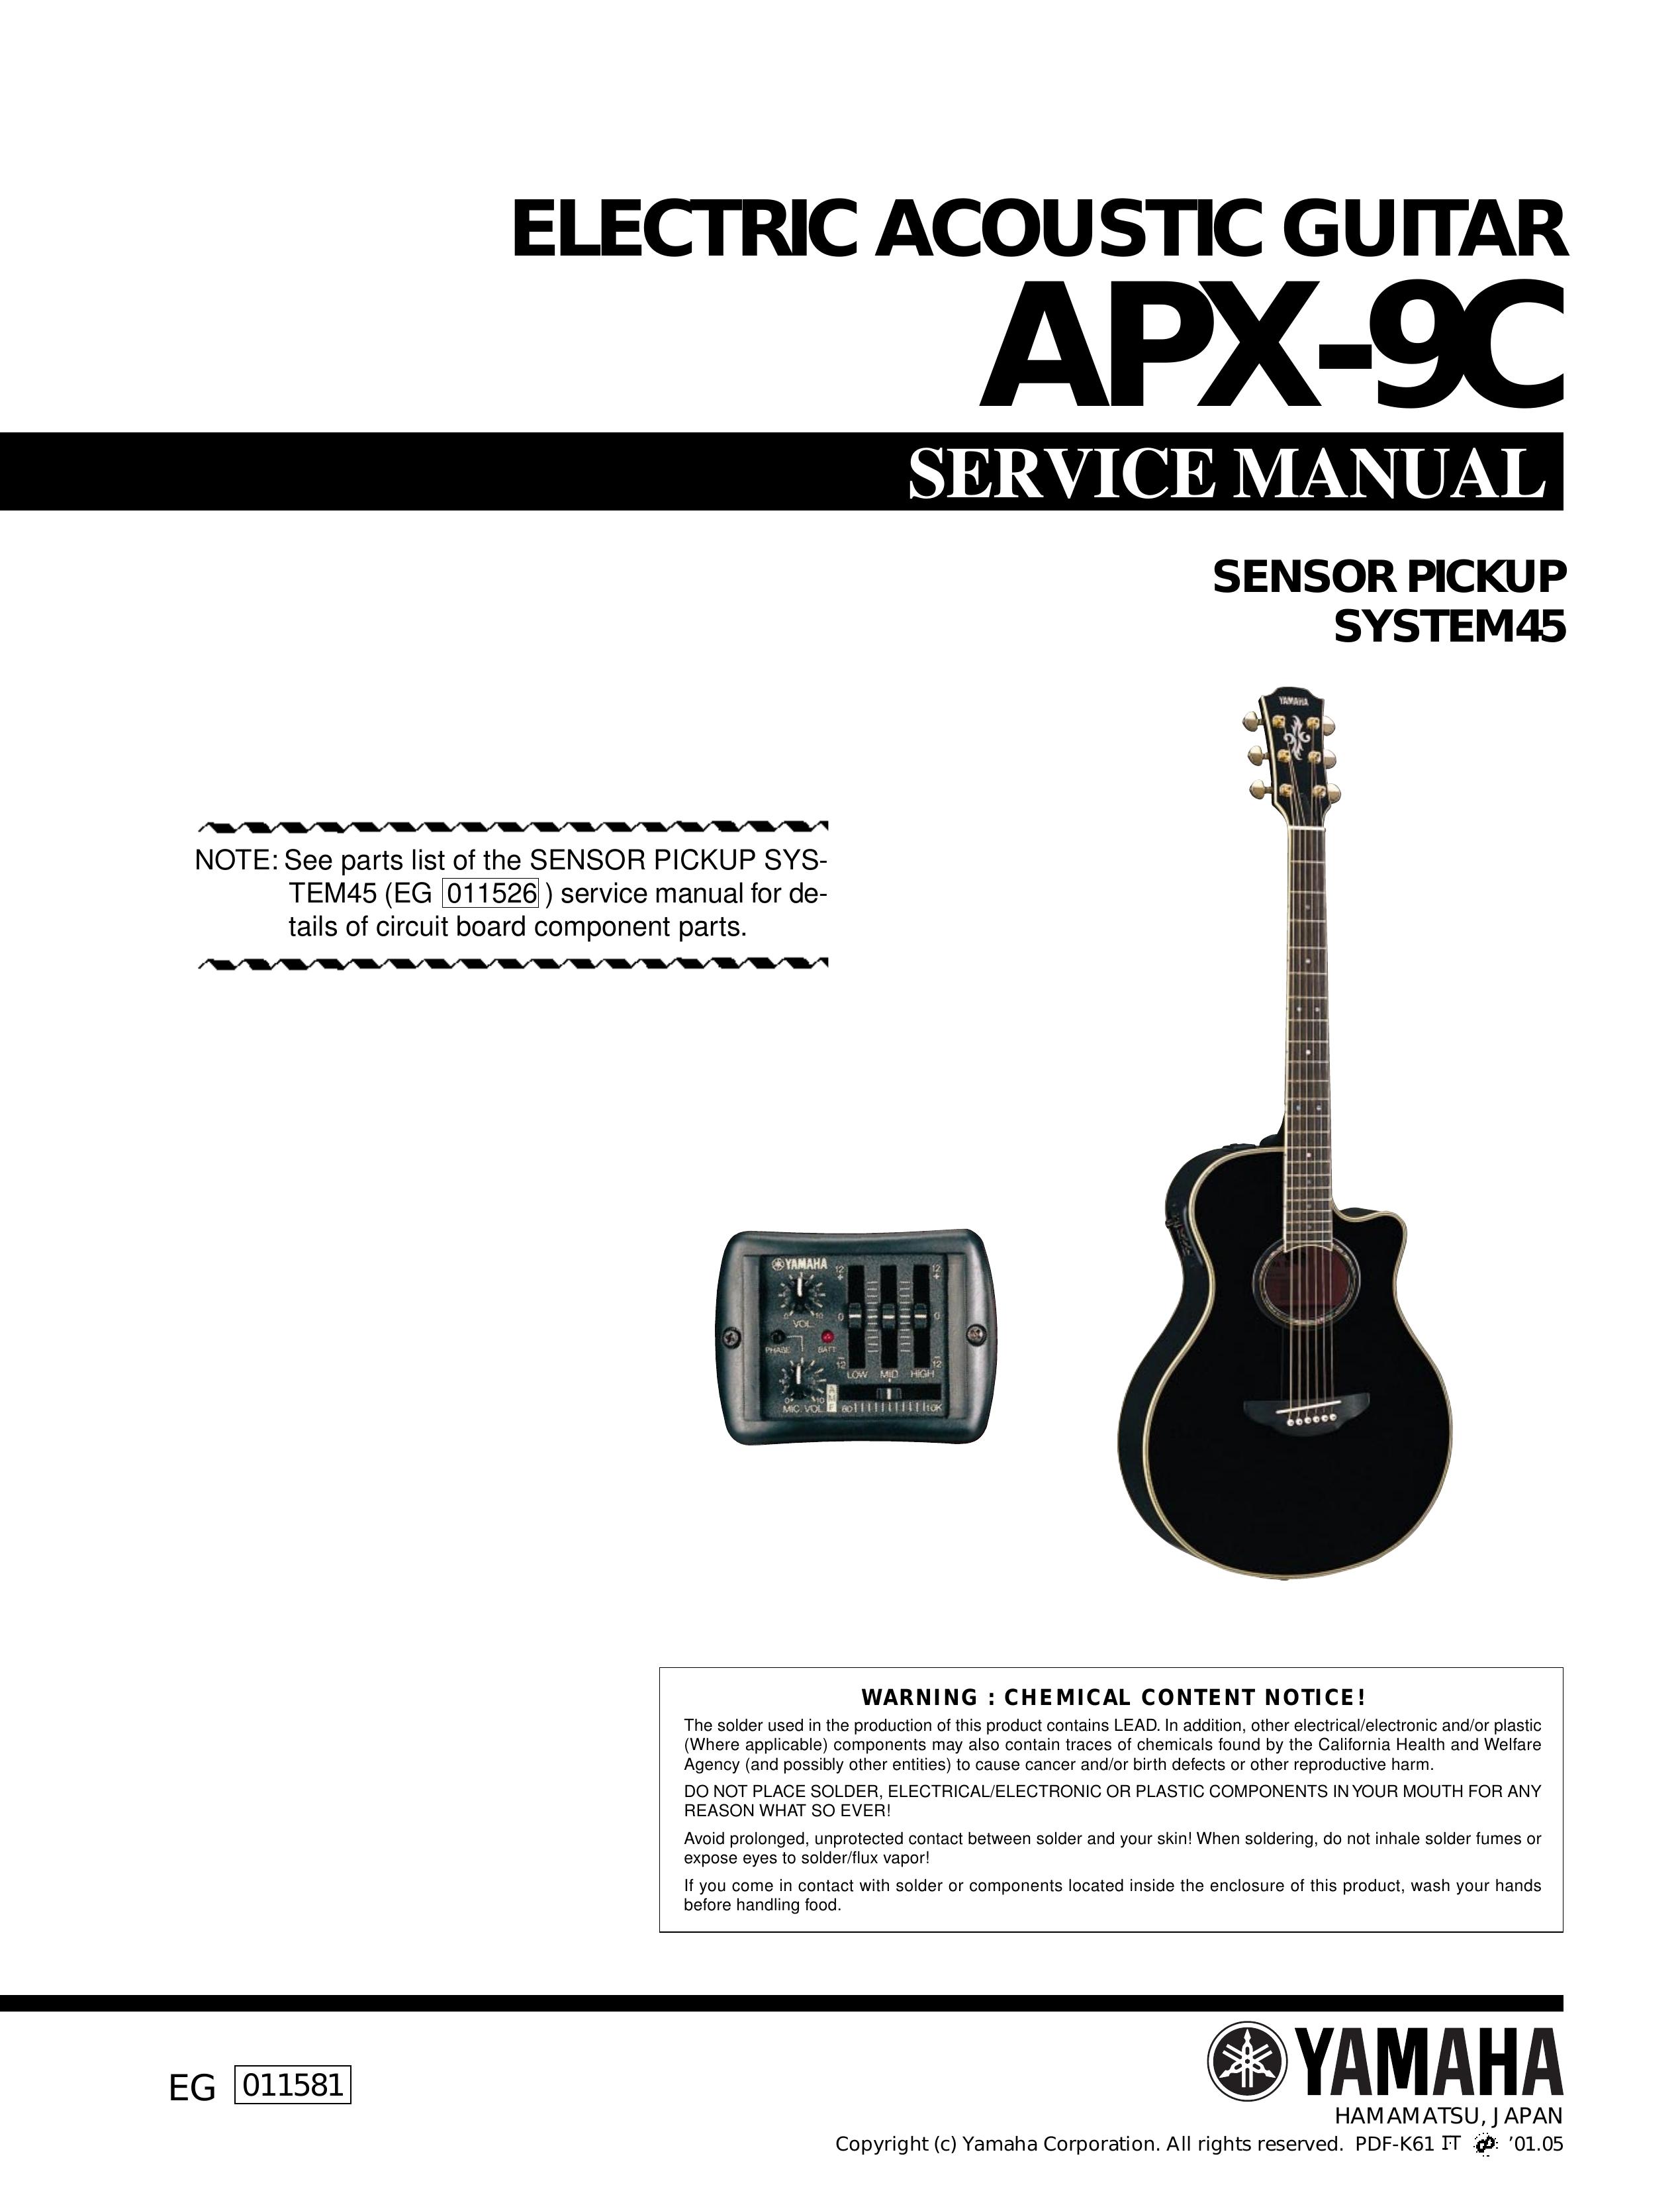 Yamaha APX-9C Guitar User Manual